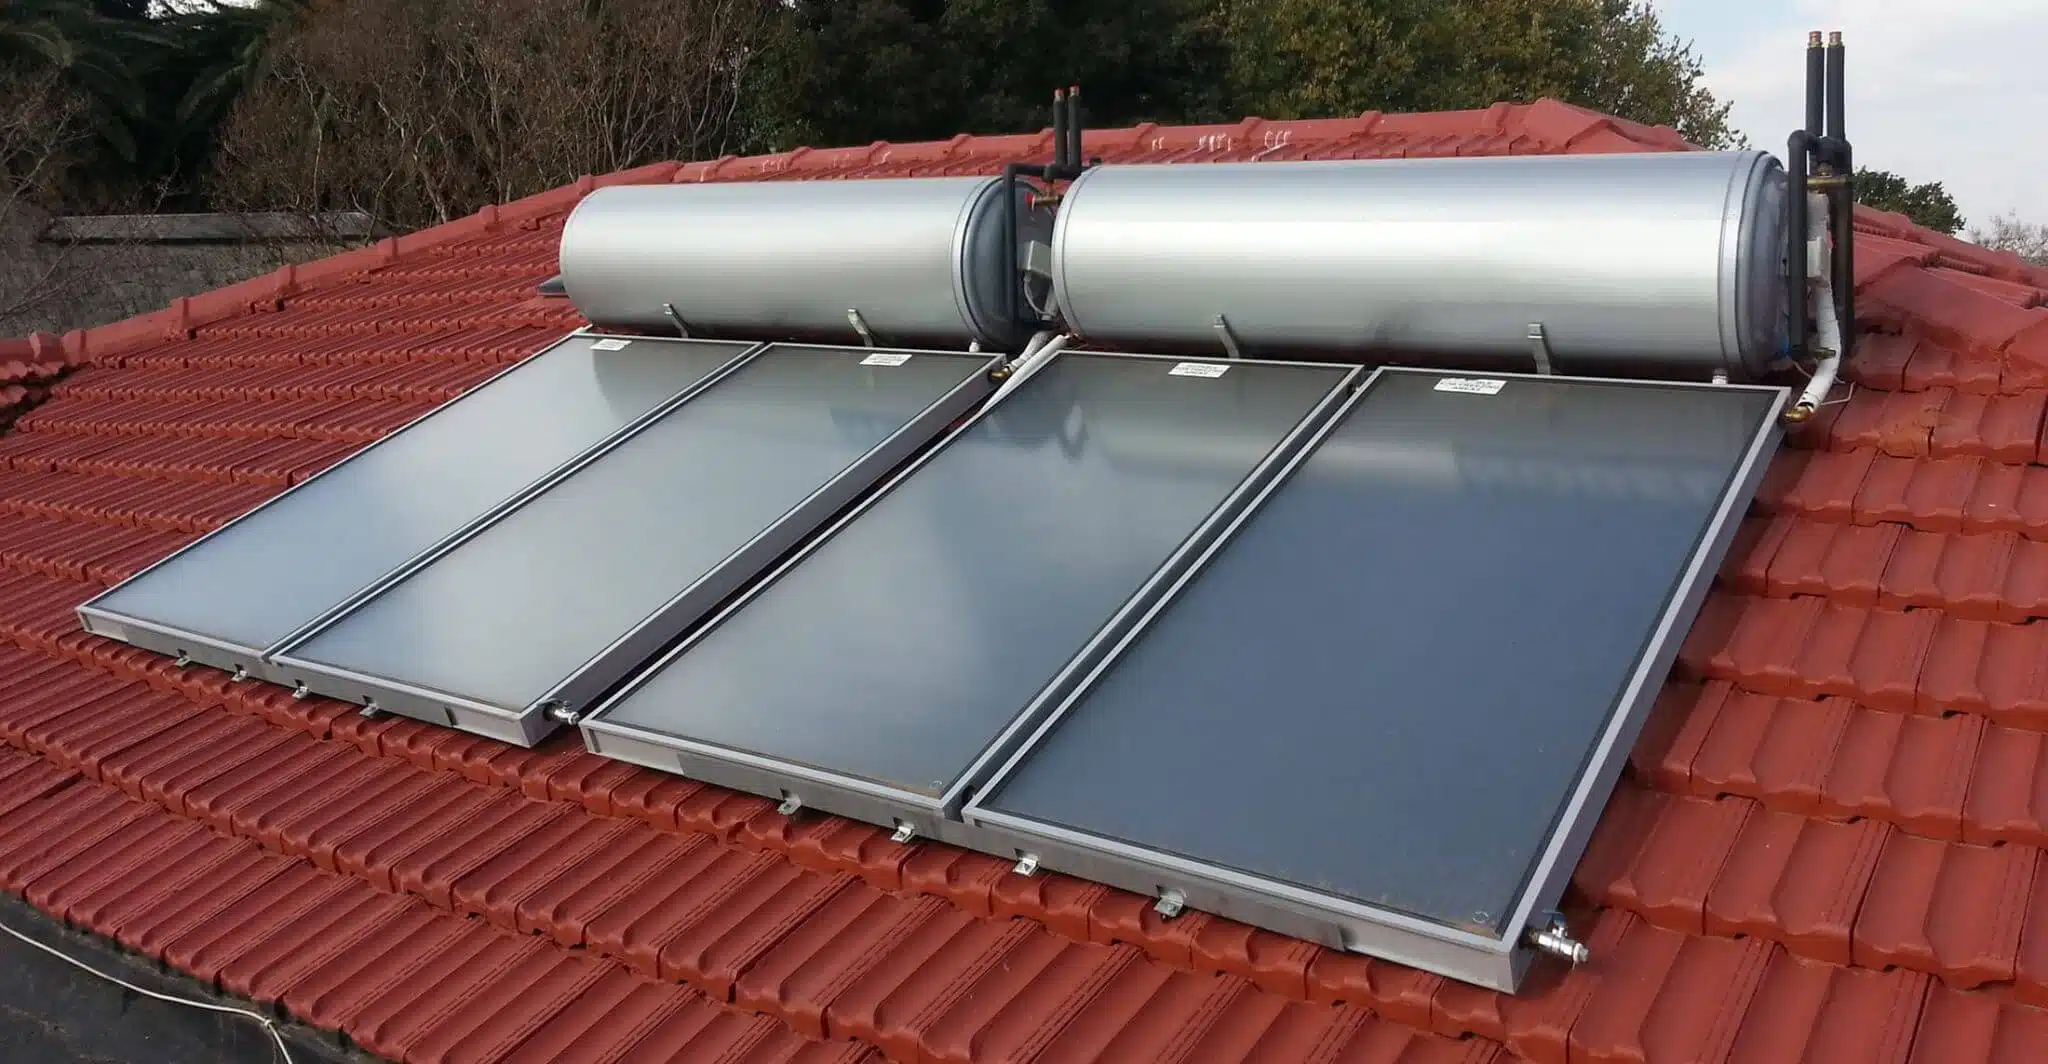 تصویری از آبگرمکن های خورشیدی که به وسیله صفحات تخت کلکتور پوشانده شده است. نمای سقف رنگ قرمز دارد 